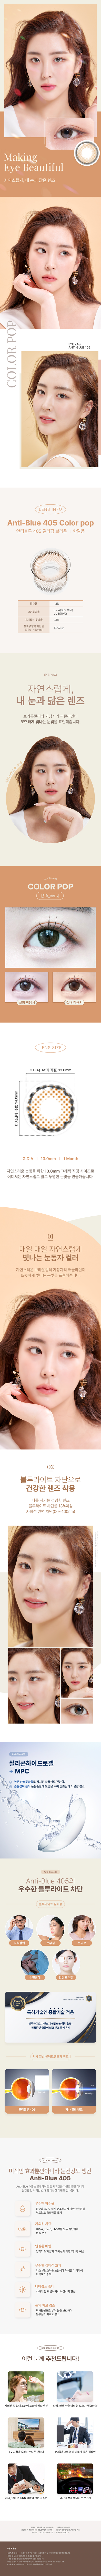 안티블루 컬러팝 렌즈-한국시과학연구소